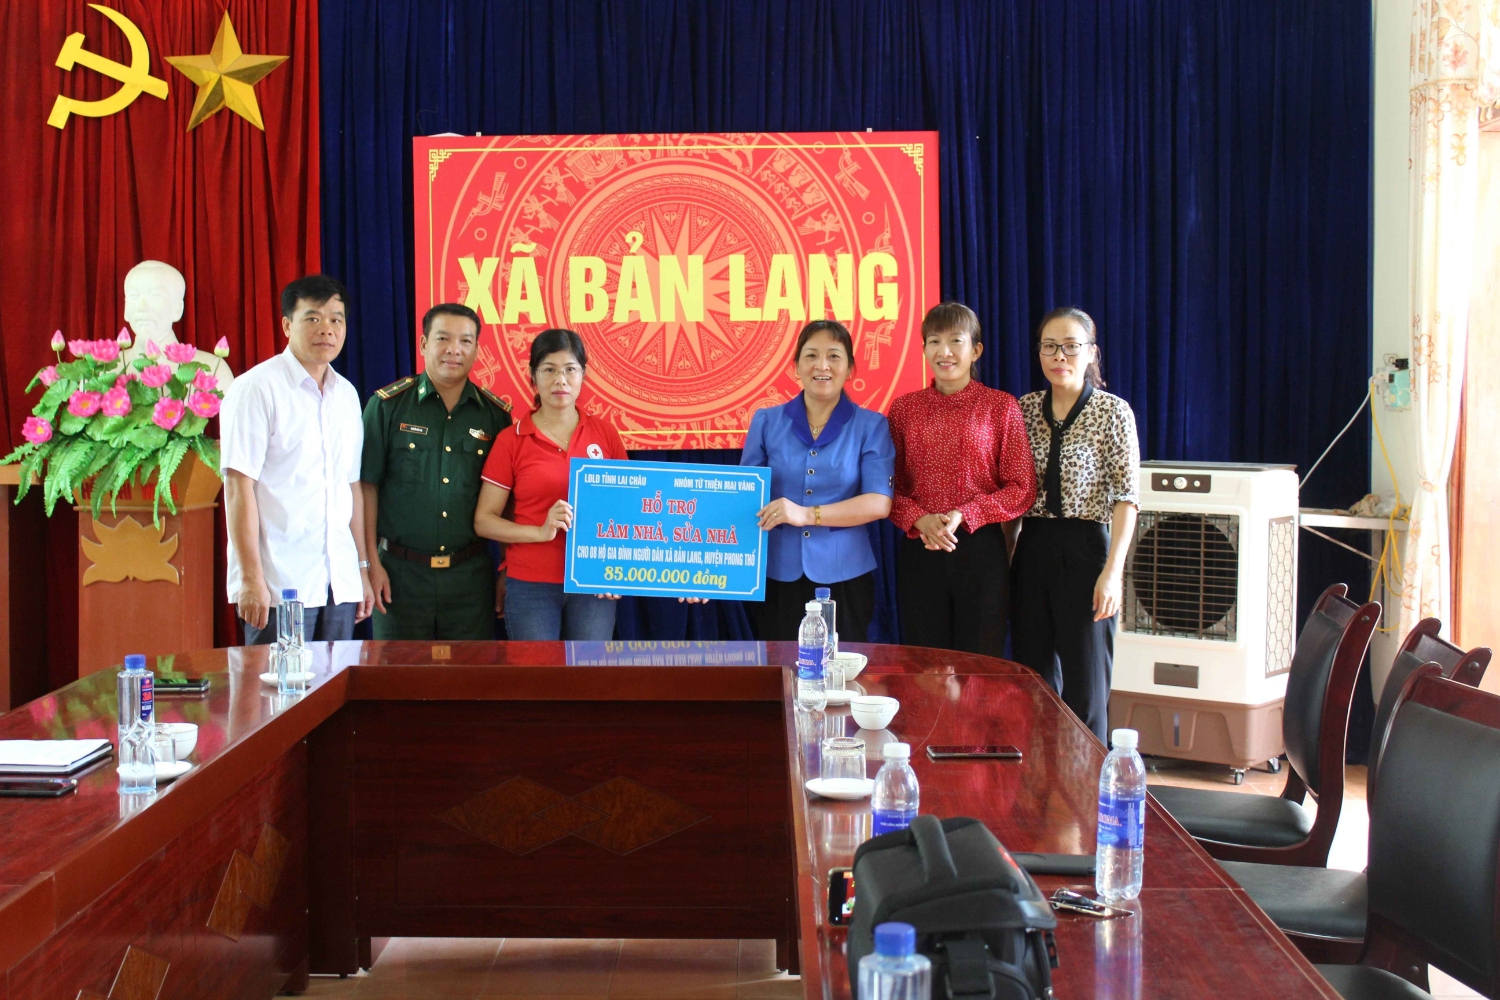 Đồng chí Nguyễn Thị Thiện – Chủ tịch LĐLĐ tỉnh trao hỗ trợ cho Hội Chữ thập đỏ huyện và UBND xã Bản Lang quản lý, đôn đốc giúp đỡ 8 hộ gia đình khó khăn làm nhà, sửa nhà.